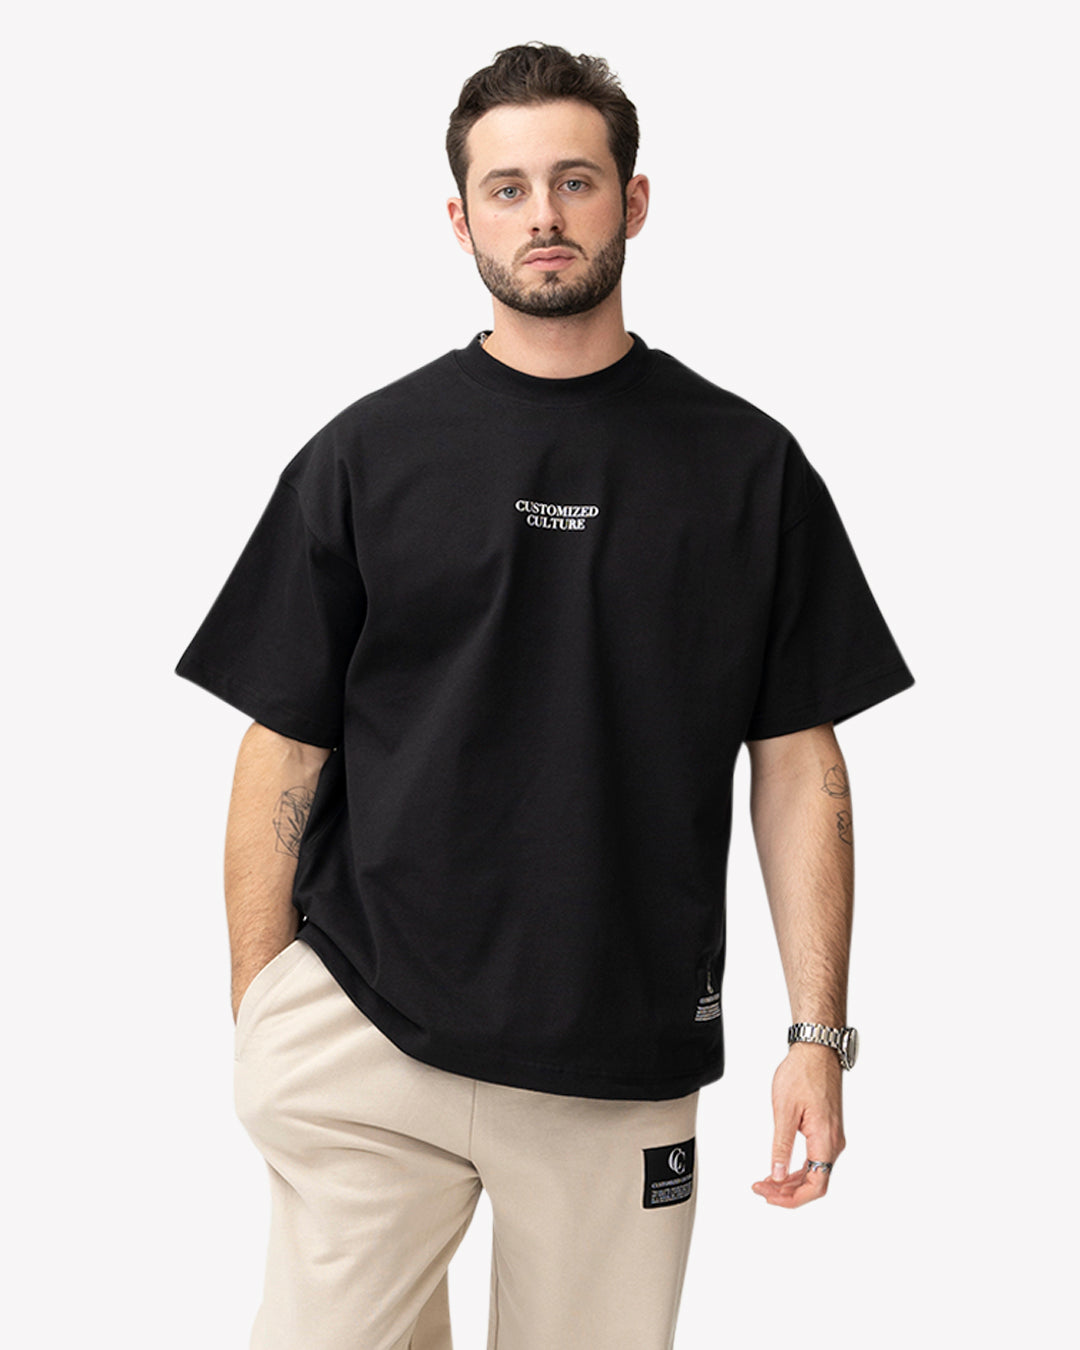 Culture T-Shirt Black | Customized Culture